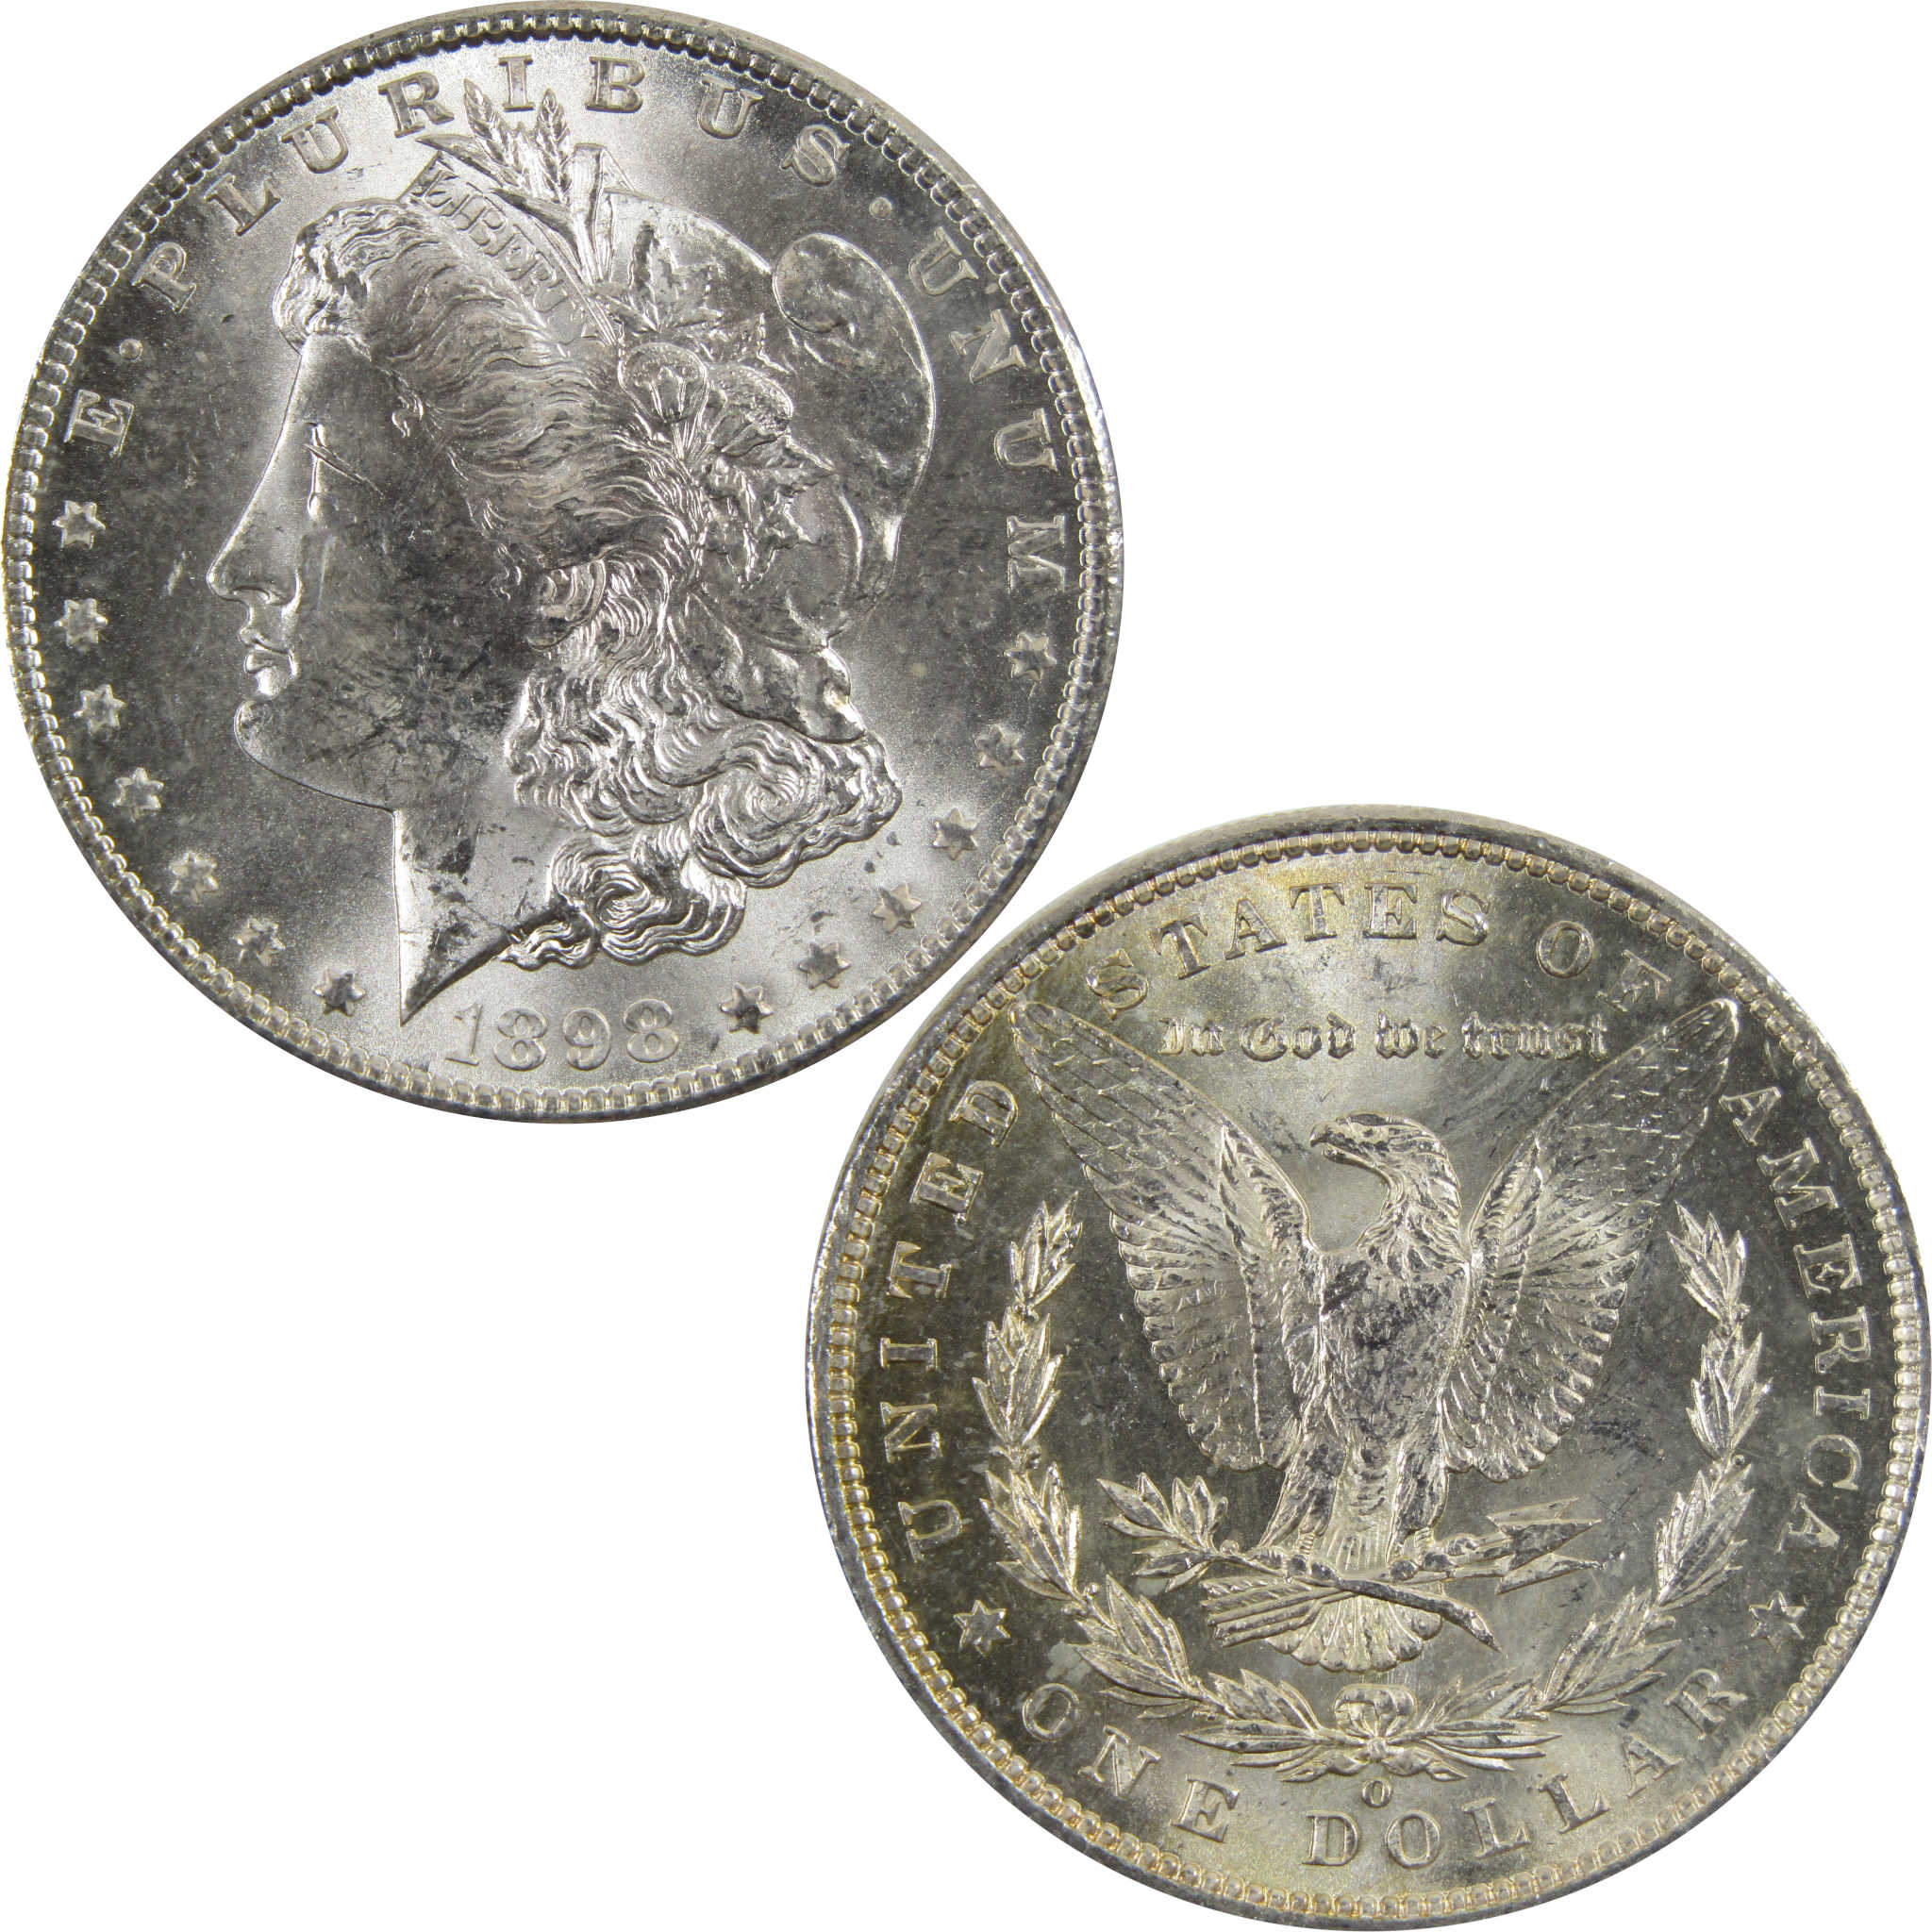 1898 O Morgan Dollar BU Uncirculated 90% Silver $1 Coin SKU:I5242 - Morgan coin - Morgan silver dollar - Morgan silver dollar for sale - Profile Coins &amp; Collectibles